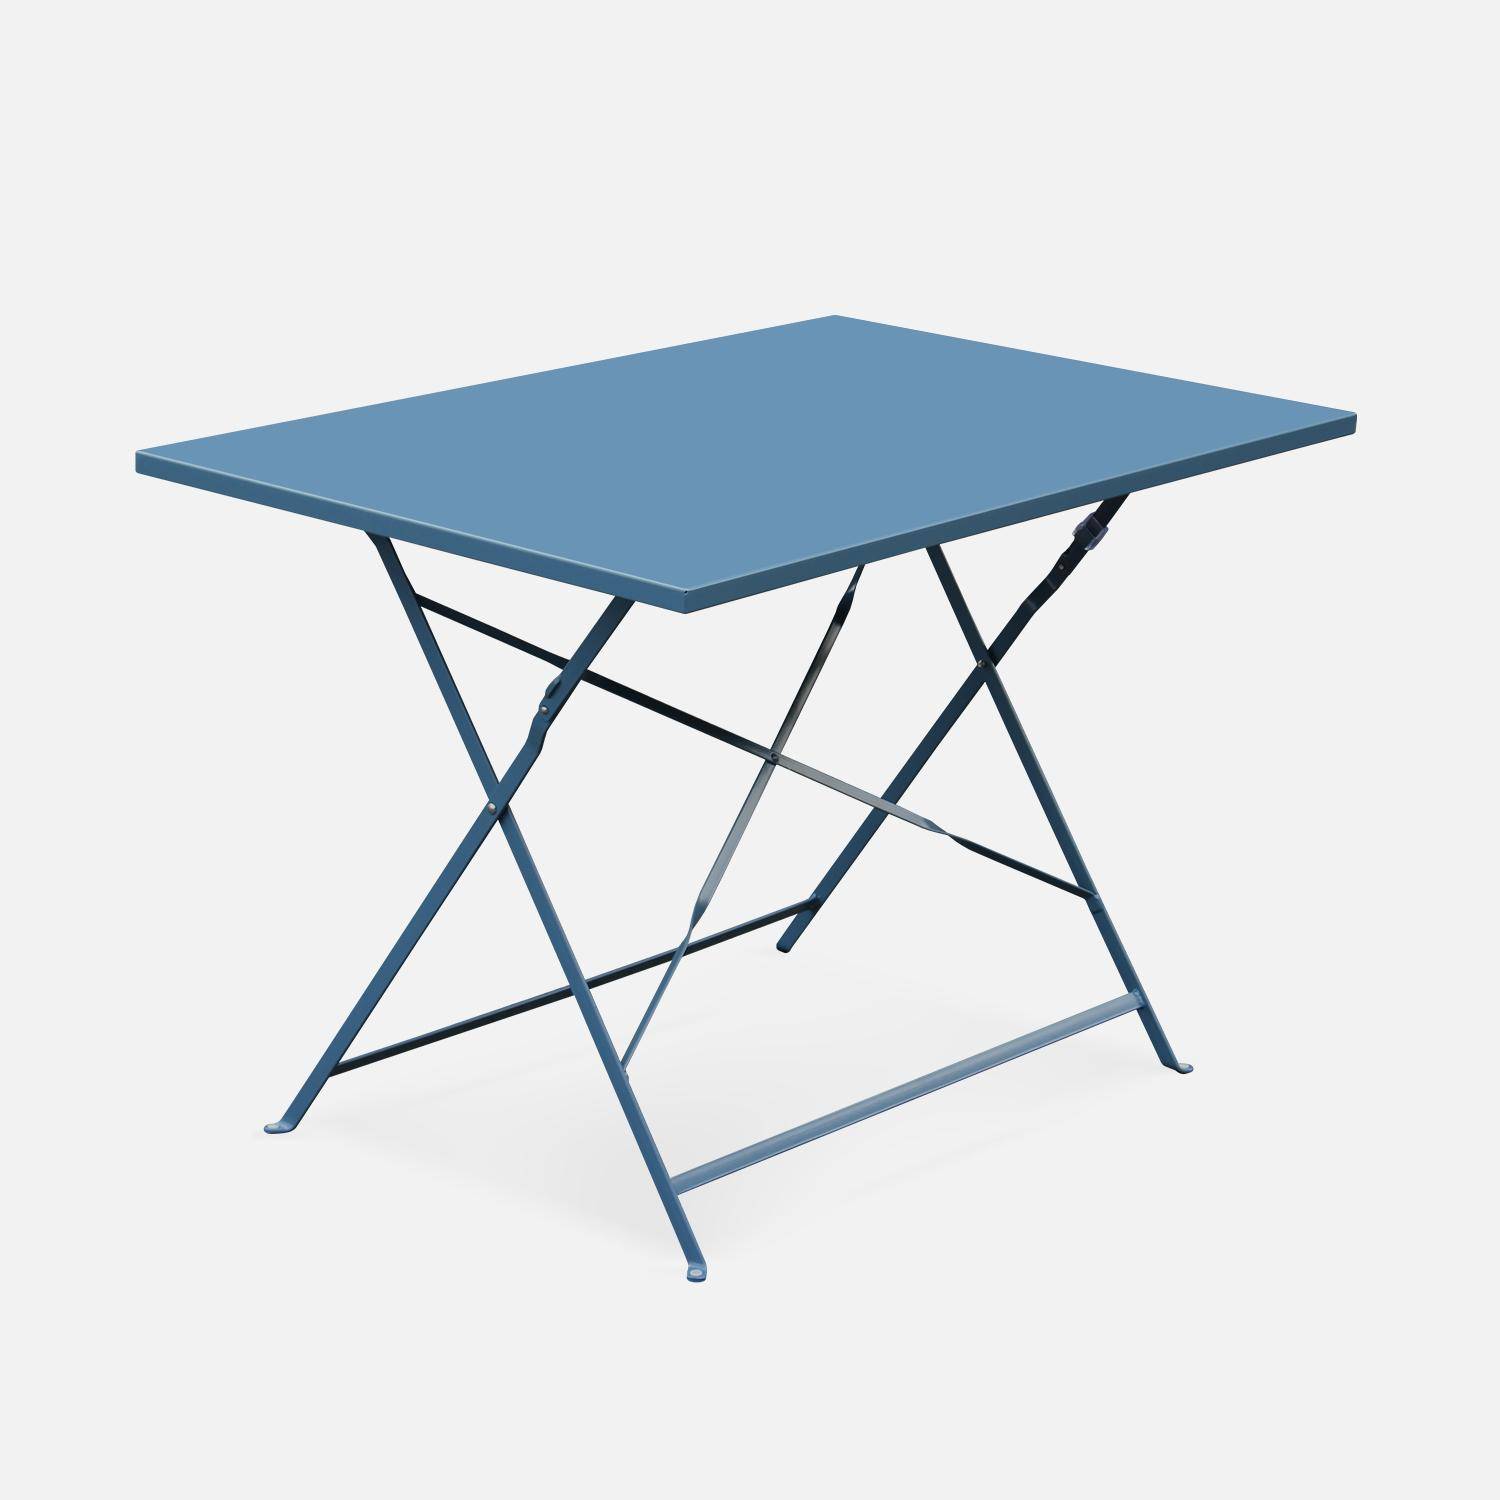 Salotto da giardino, bistrot, pieghevole - modello: Emilia, rettangolare, colore: Blu ombreggiato - Tavolo, dimensioni: 110x70cm, con quattro sedie pieghevoli, acciaio termolaccato Photo2